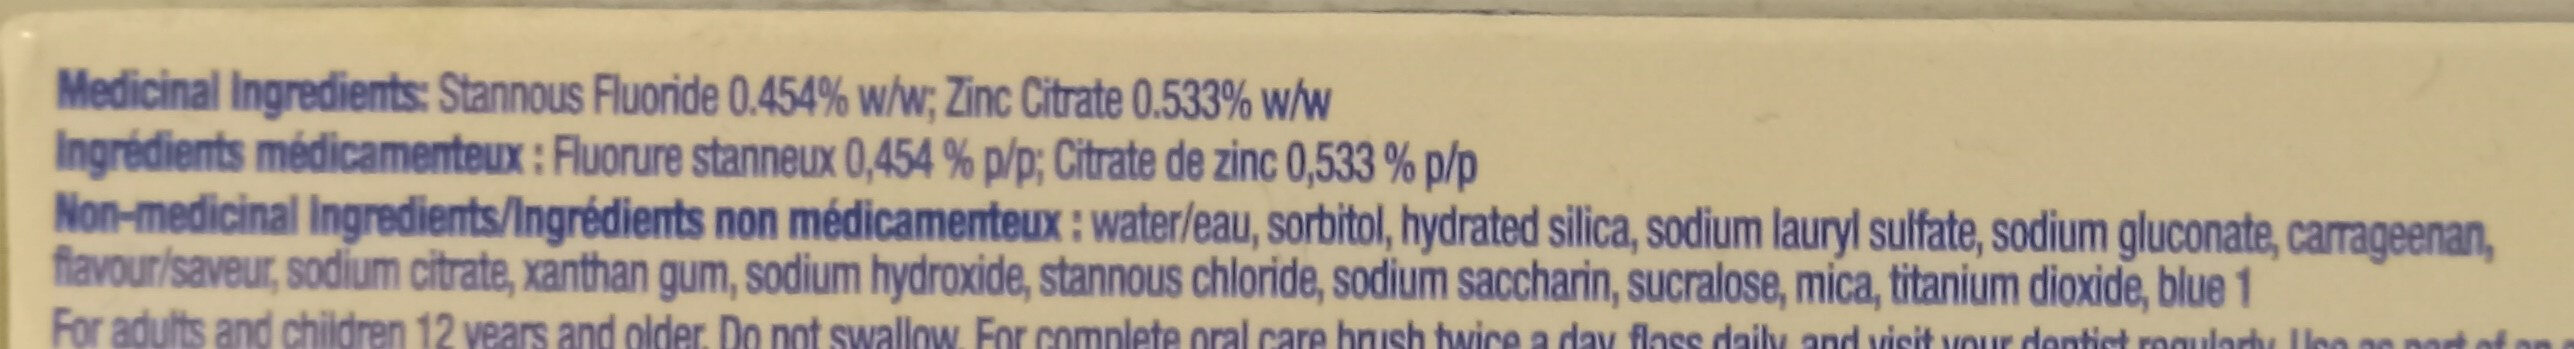 Whitening Gel Flouride Toothpaste - Ingredientes - en